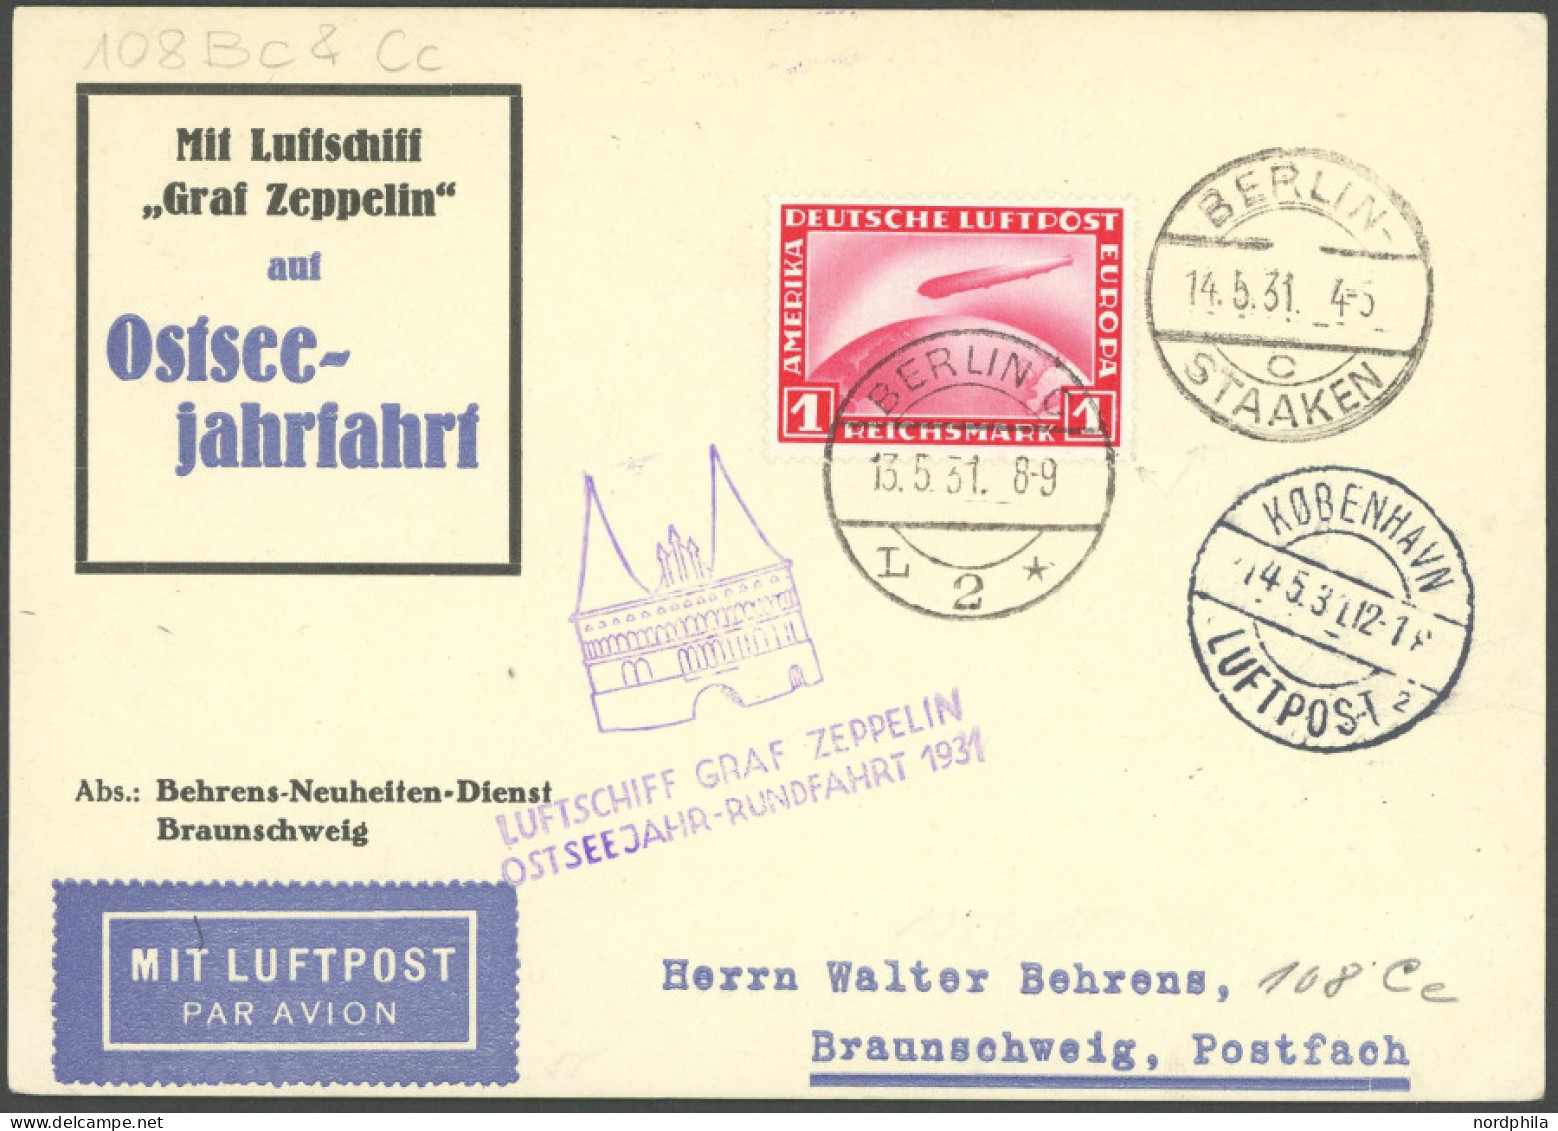 ZEPPELINPOST 108Cc BRIEF, 1931, Ostseejahr-Rundfahrt, Abwurf Kopenhagen, Auflieferung Berlin, Prachtkarte - Airmail & Zeppelin